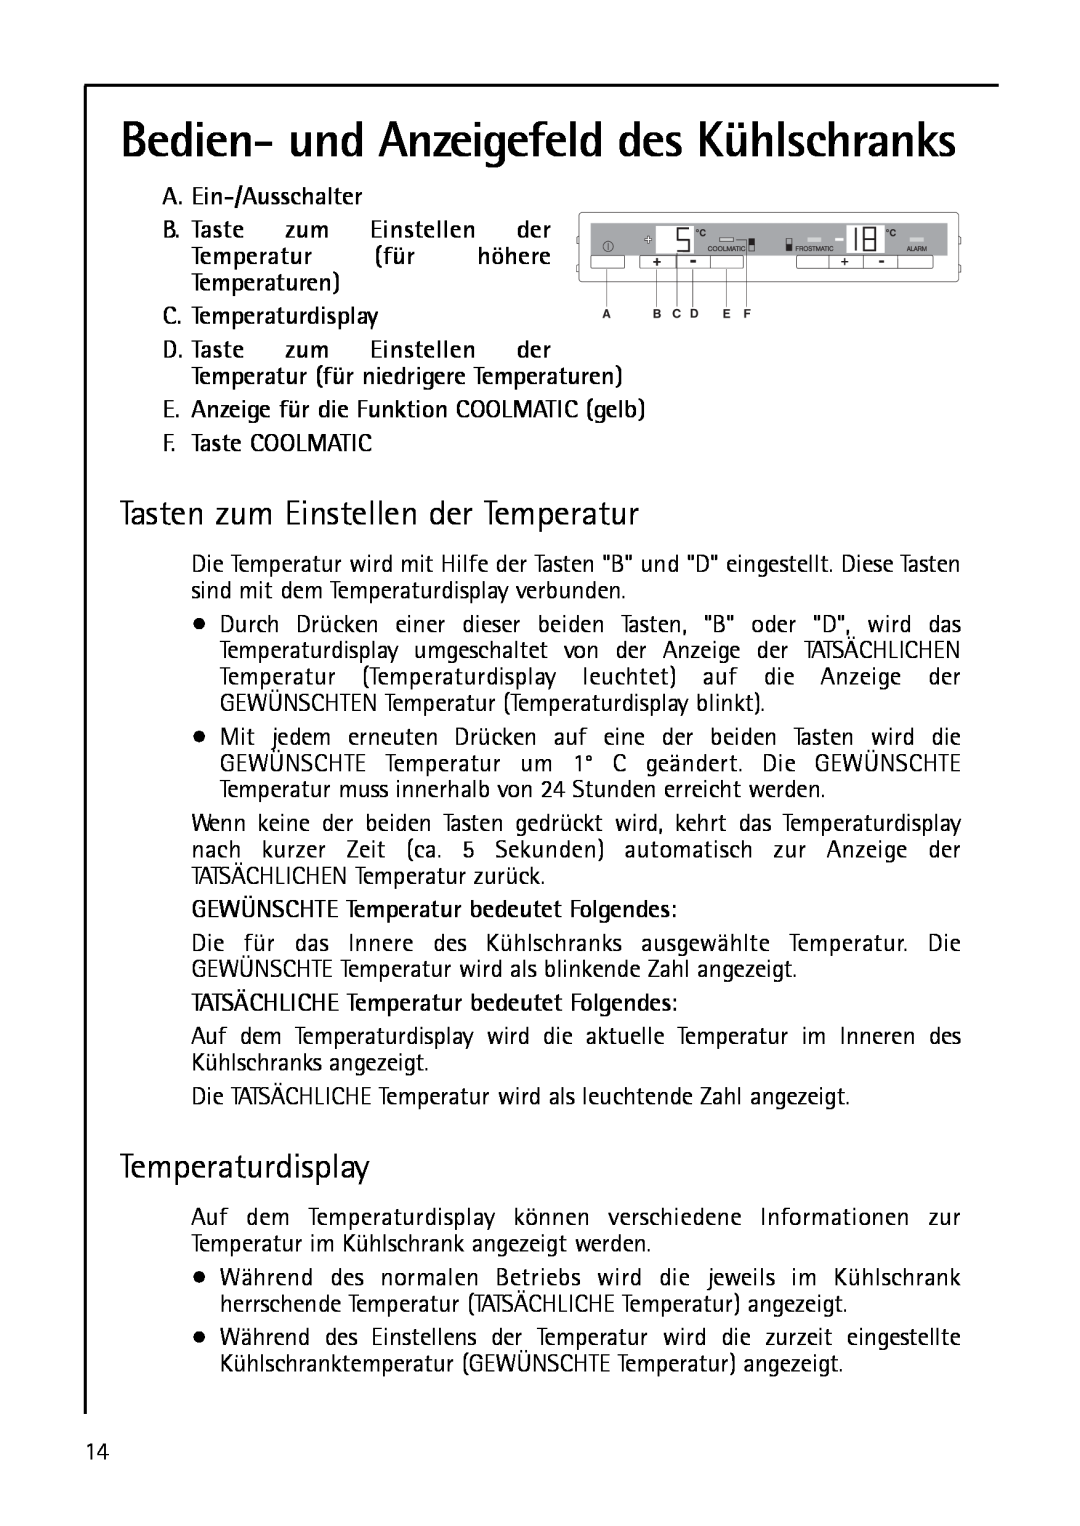 AEG S 75388 KG8 Bedien- und Anzeigefeld des Kühlschranks, A.Ein-/Ausschalter B.Taste zum Einstellen der, F.Taste COOLMATIC 